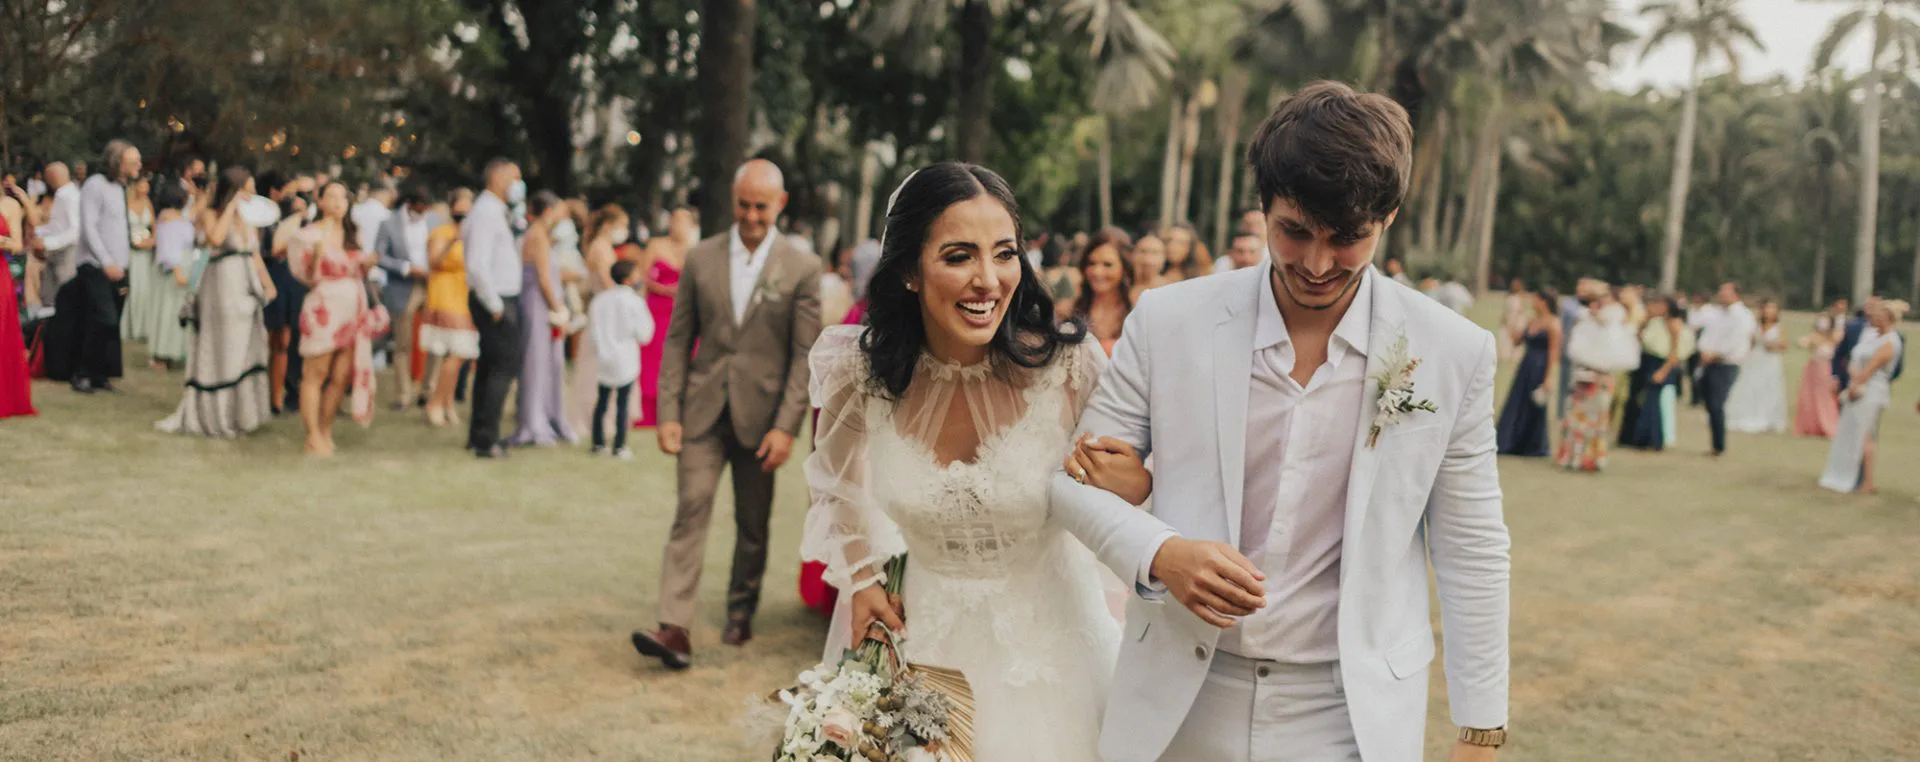 Wedding Blog Brasil (weddingblogbrasil) - Profile